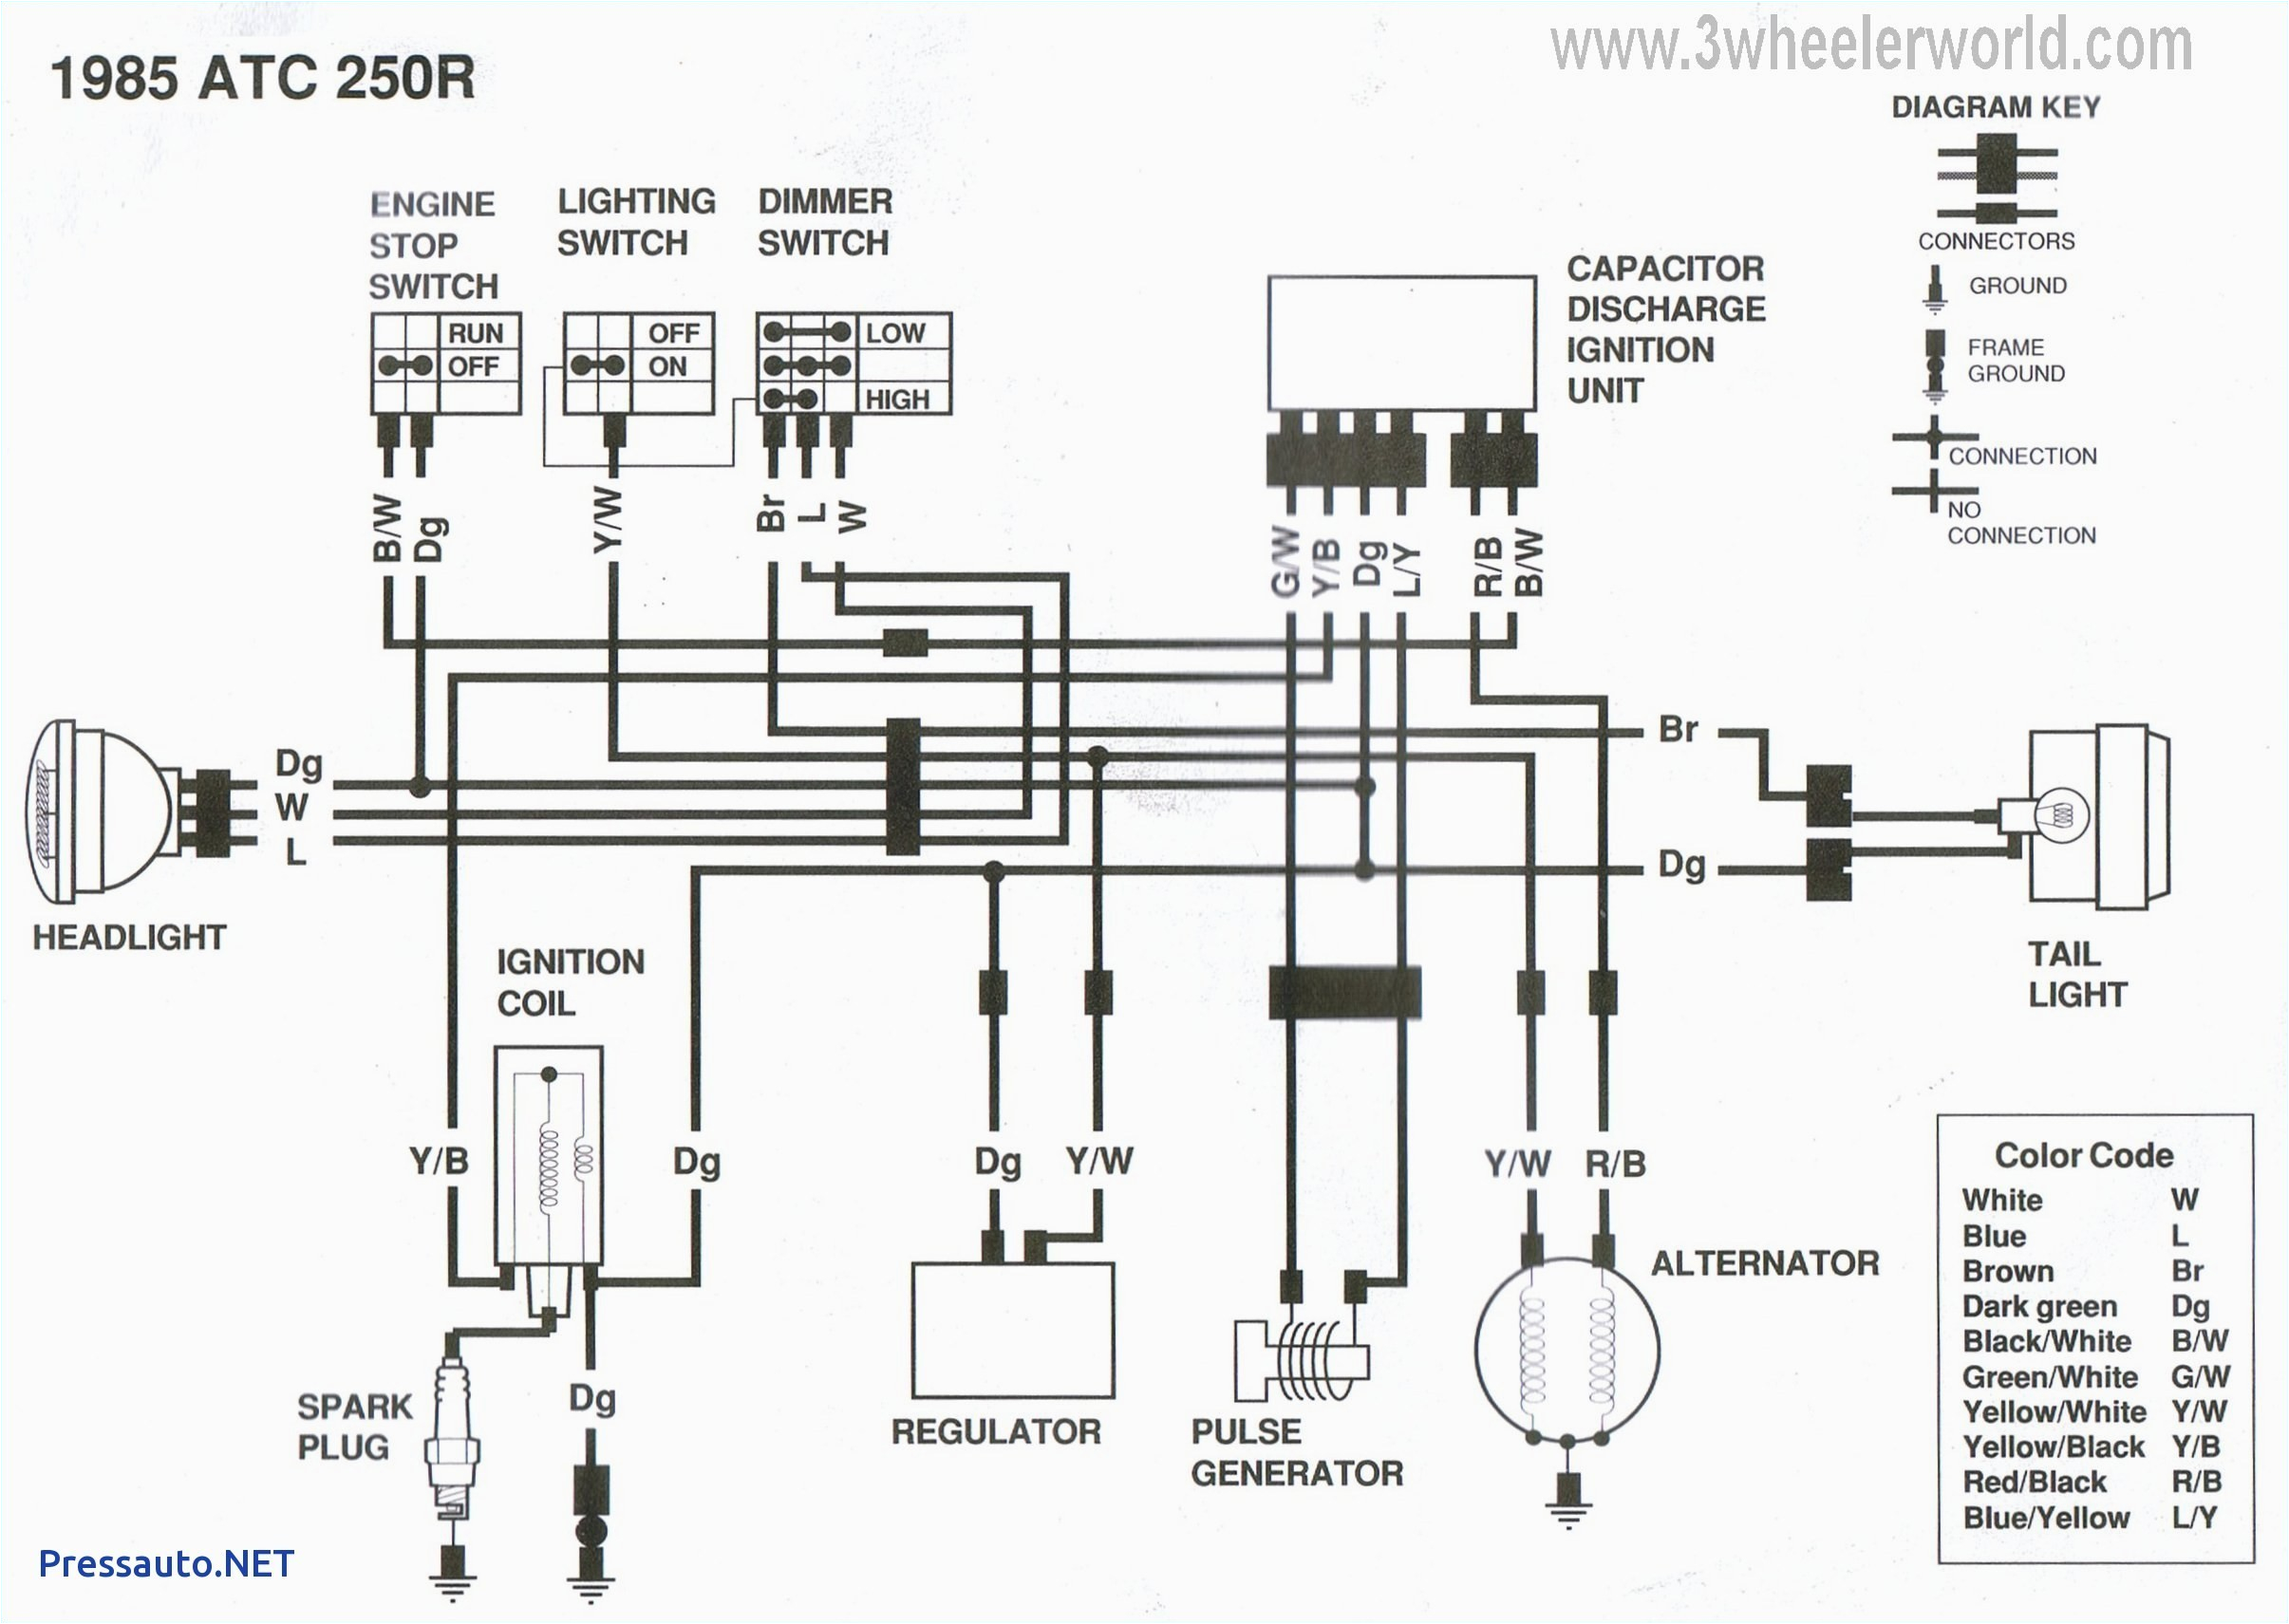 fz700 wiring diagram wiring diagram fz700 wiring diagram